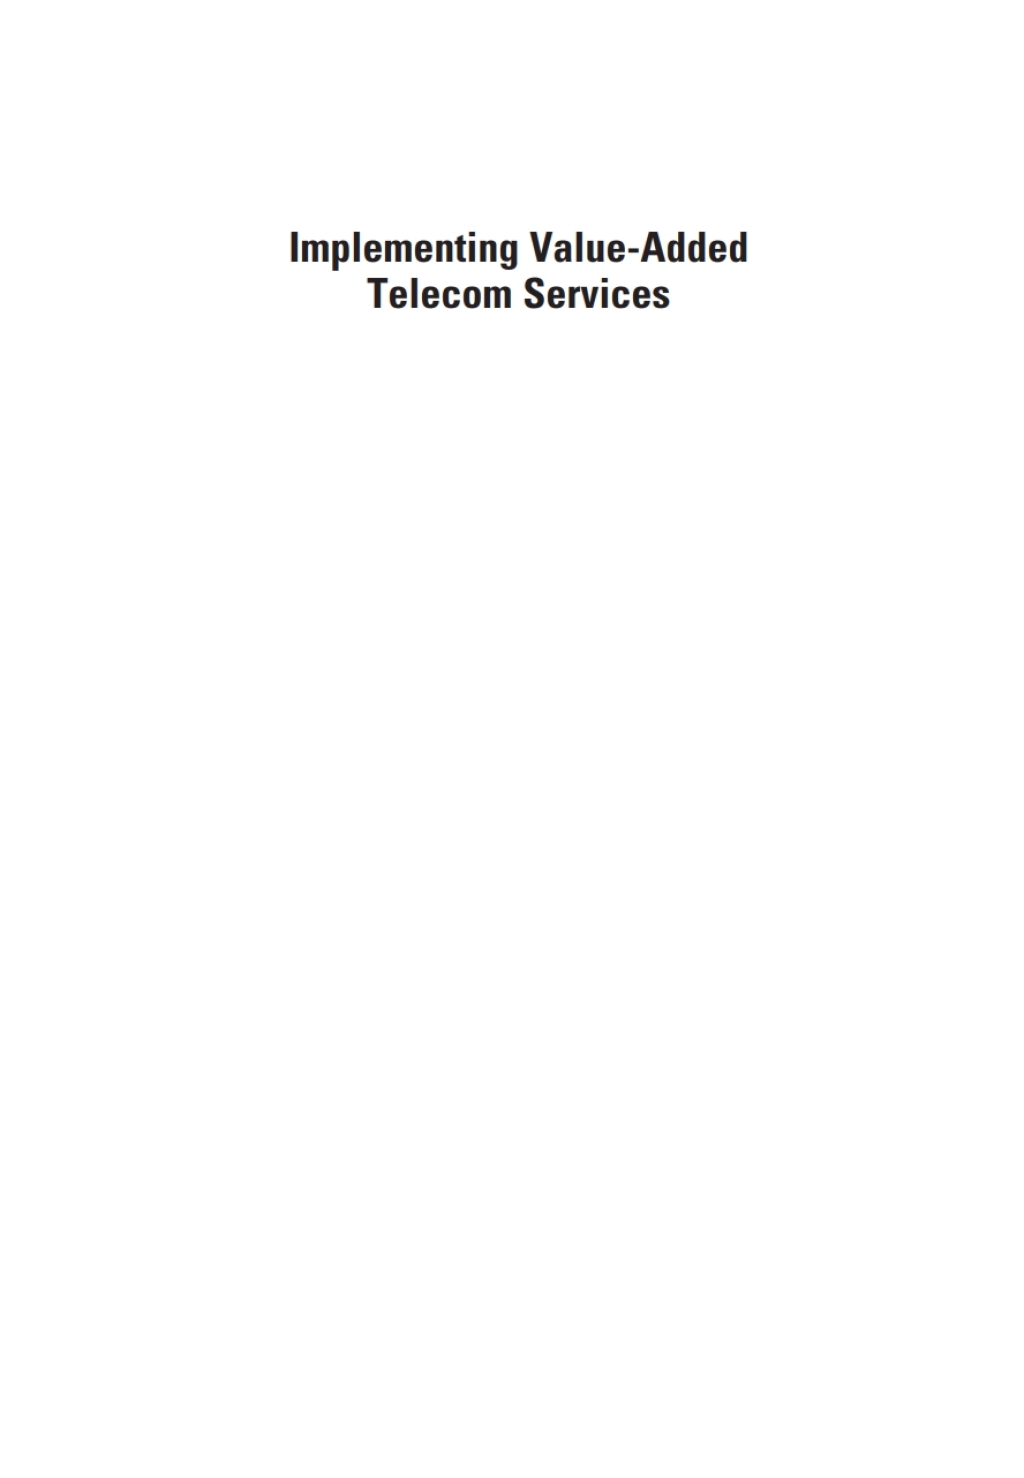 Implementing Value-Added Telecom Services (eBook) - Johan Zuidweg